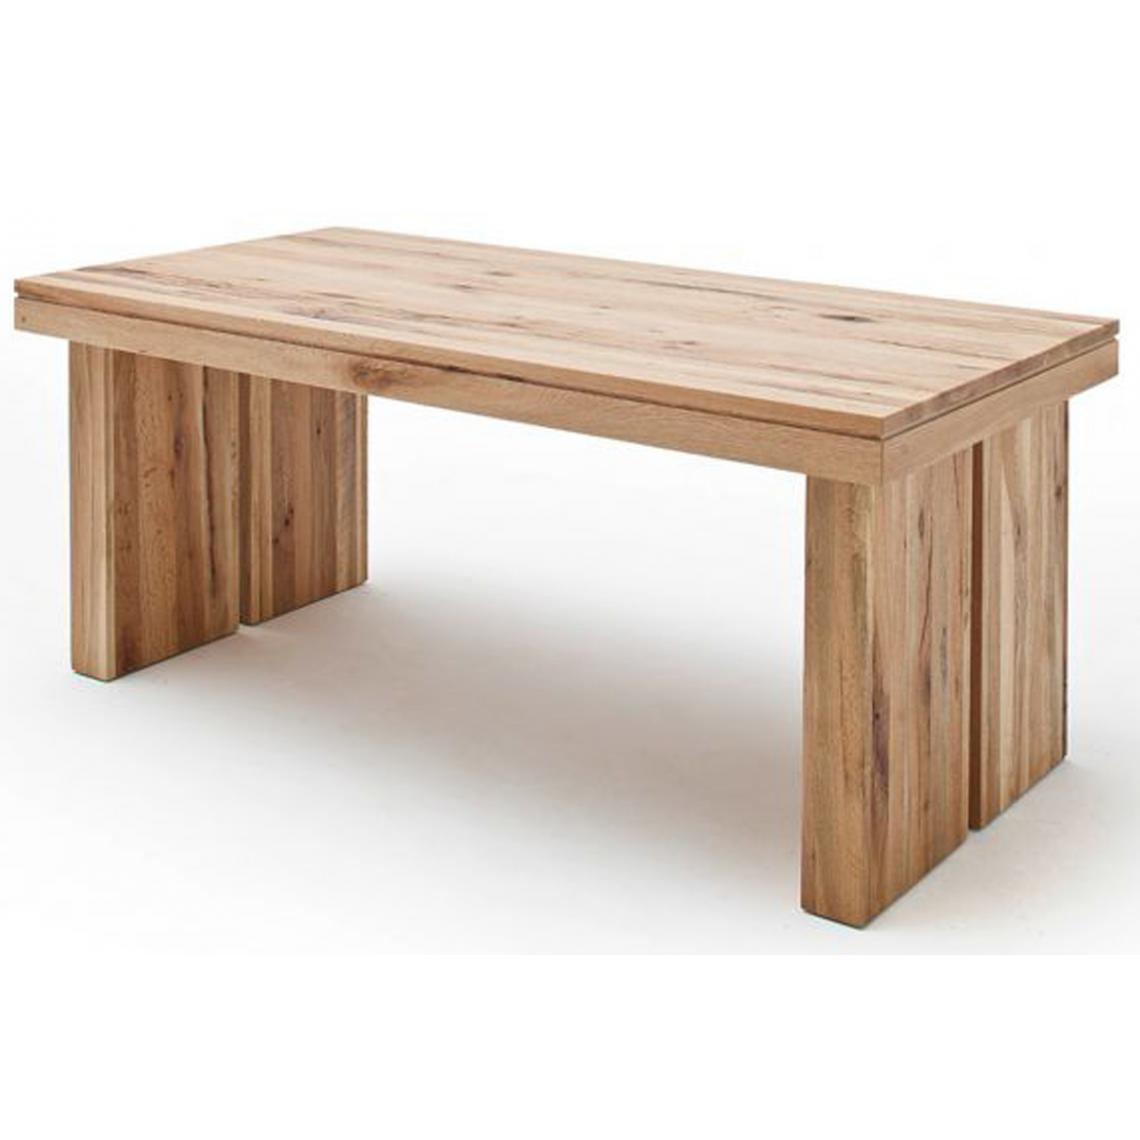 Pegane - Table à manger rectangulaire en chêne sauvage laqué mat massif - L.180 x H.76 x P.90 cm - Tables à manger